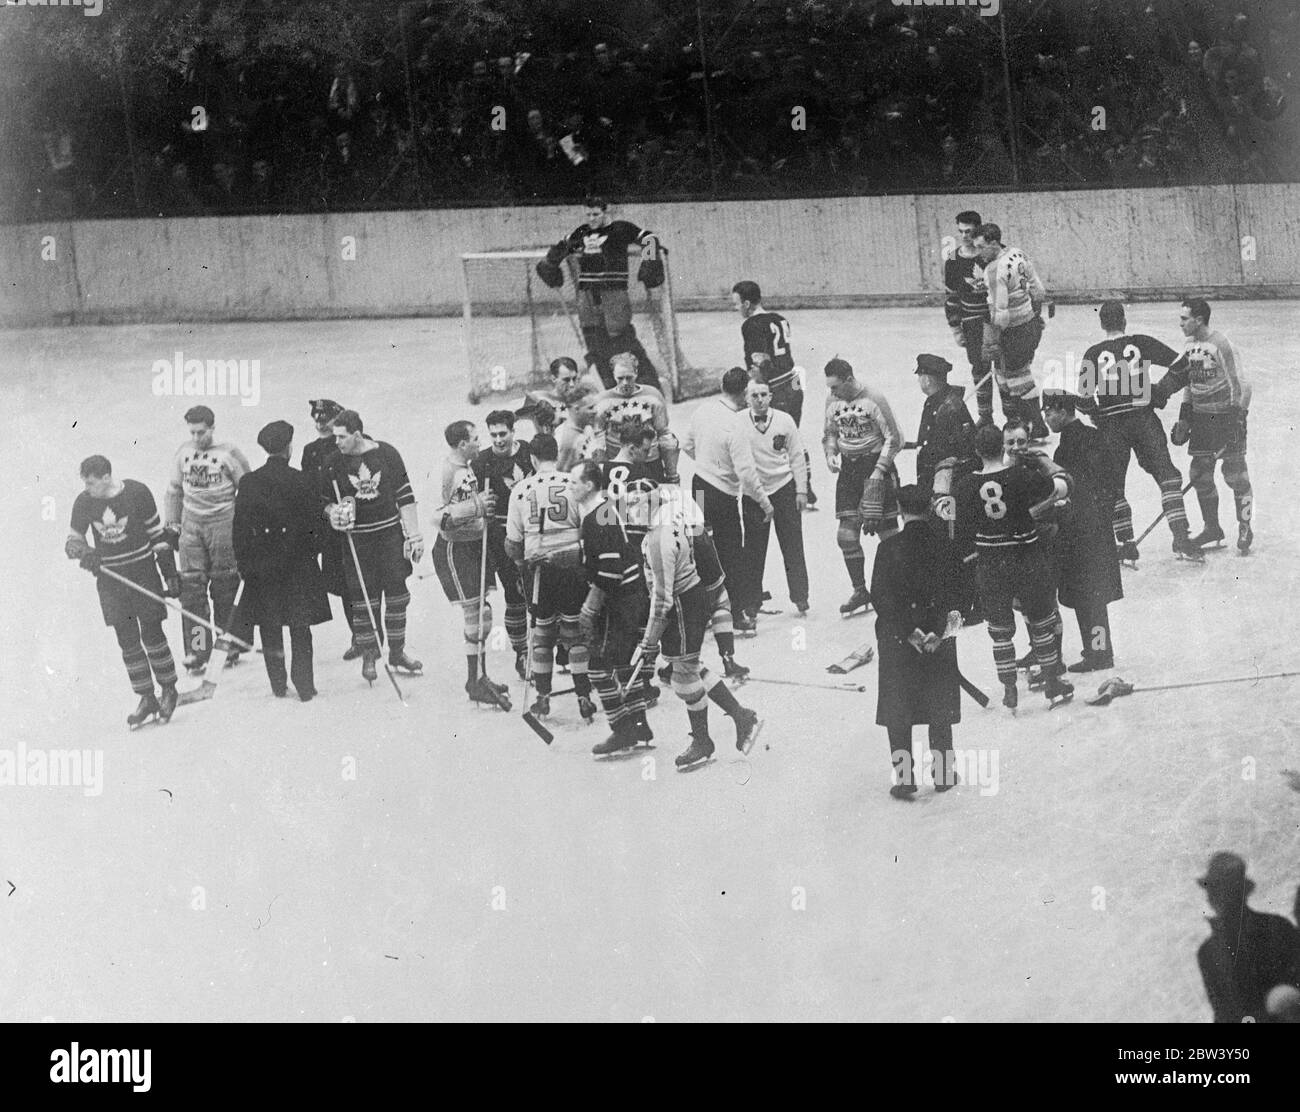 La partita di hockey su ghiaccio di New York termina in lotta libera , intervento della polizia . Una lotta libera , in cui una squadra di polizia fu costretta ad intervenire per ristabilire l'ordine , segnò la partita di hockey su ghiaccio tra le Americhe di New York e i Toronto Maple Leafs al Madison Square Gardens , New York . Gli americani hanno sconfitto i Maple Leafs 3 - 1 . Spettacoli fotografici , polizia restaurando ordine tra i giocatori sul ghiaccio a Madison Square Gardens . 9 marzo 1937 Foto Stock